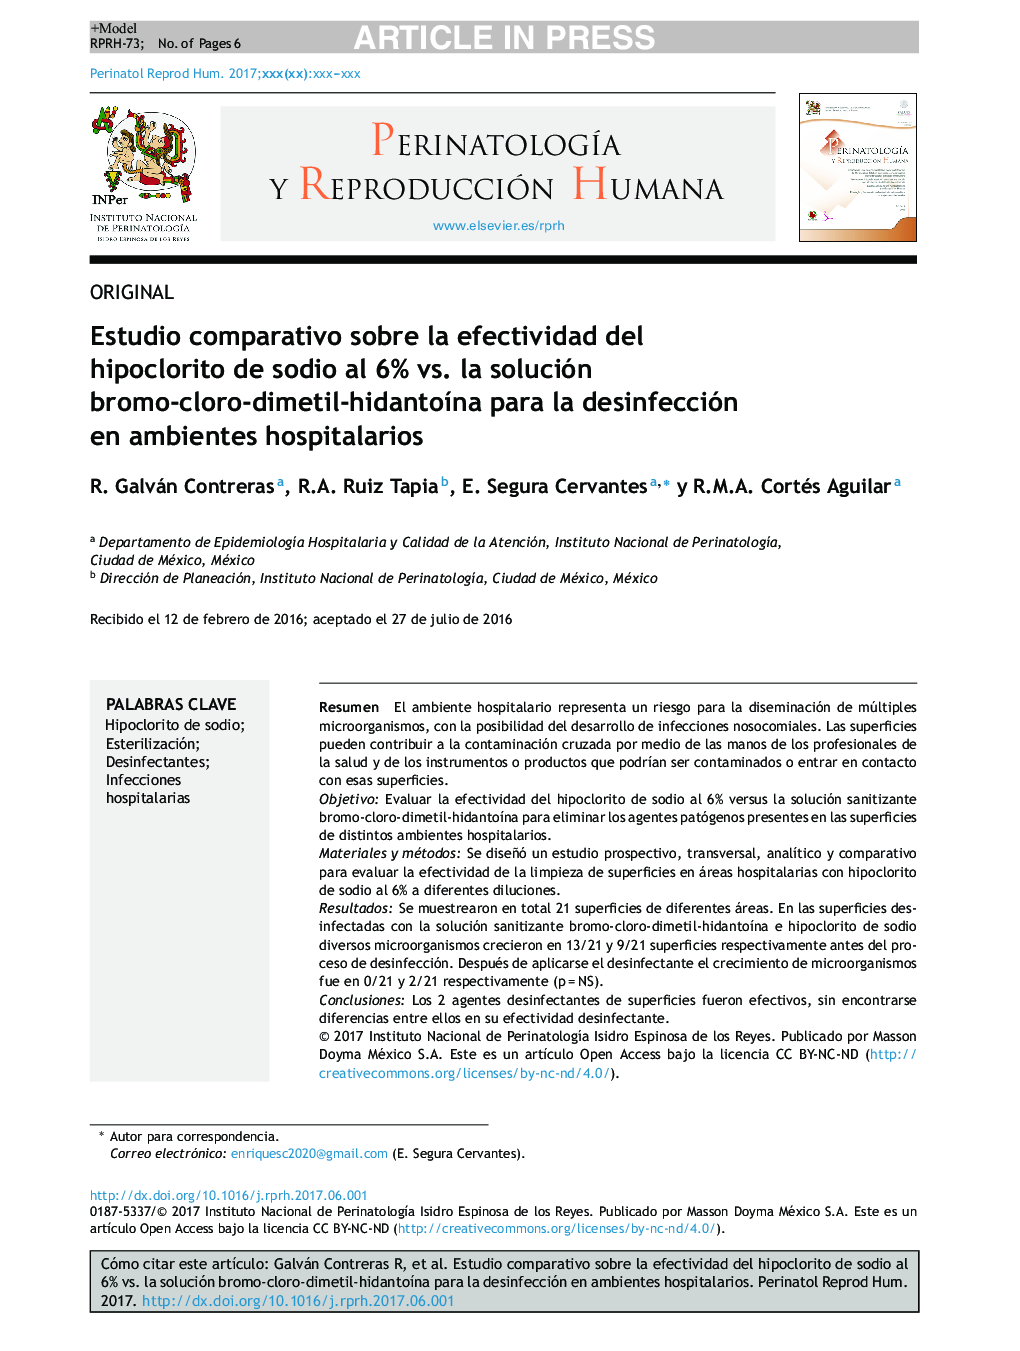 Estudio comparativo sobre la efectividad del hipoclorito de sodio al 6% vs. la solución bromo-cloro-dimetil-hidantoÃ­na para la desinfección en ambientes hospitalarios